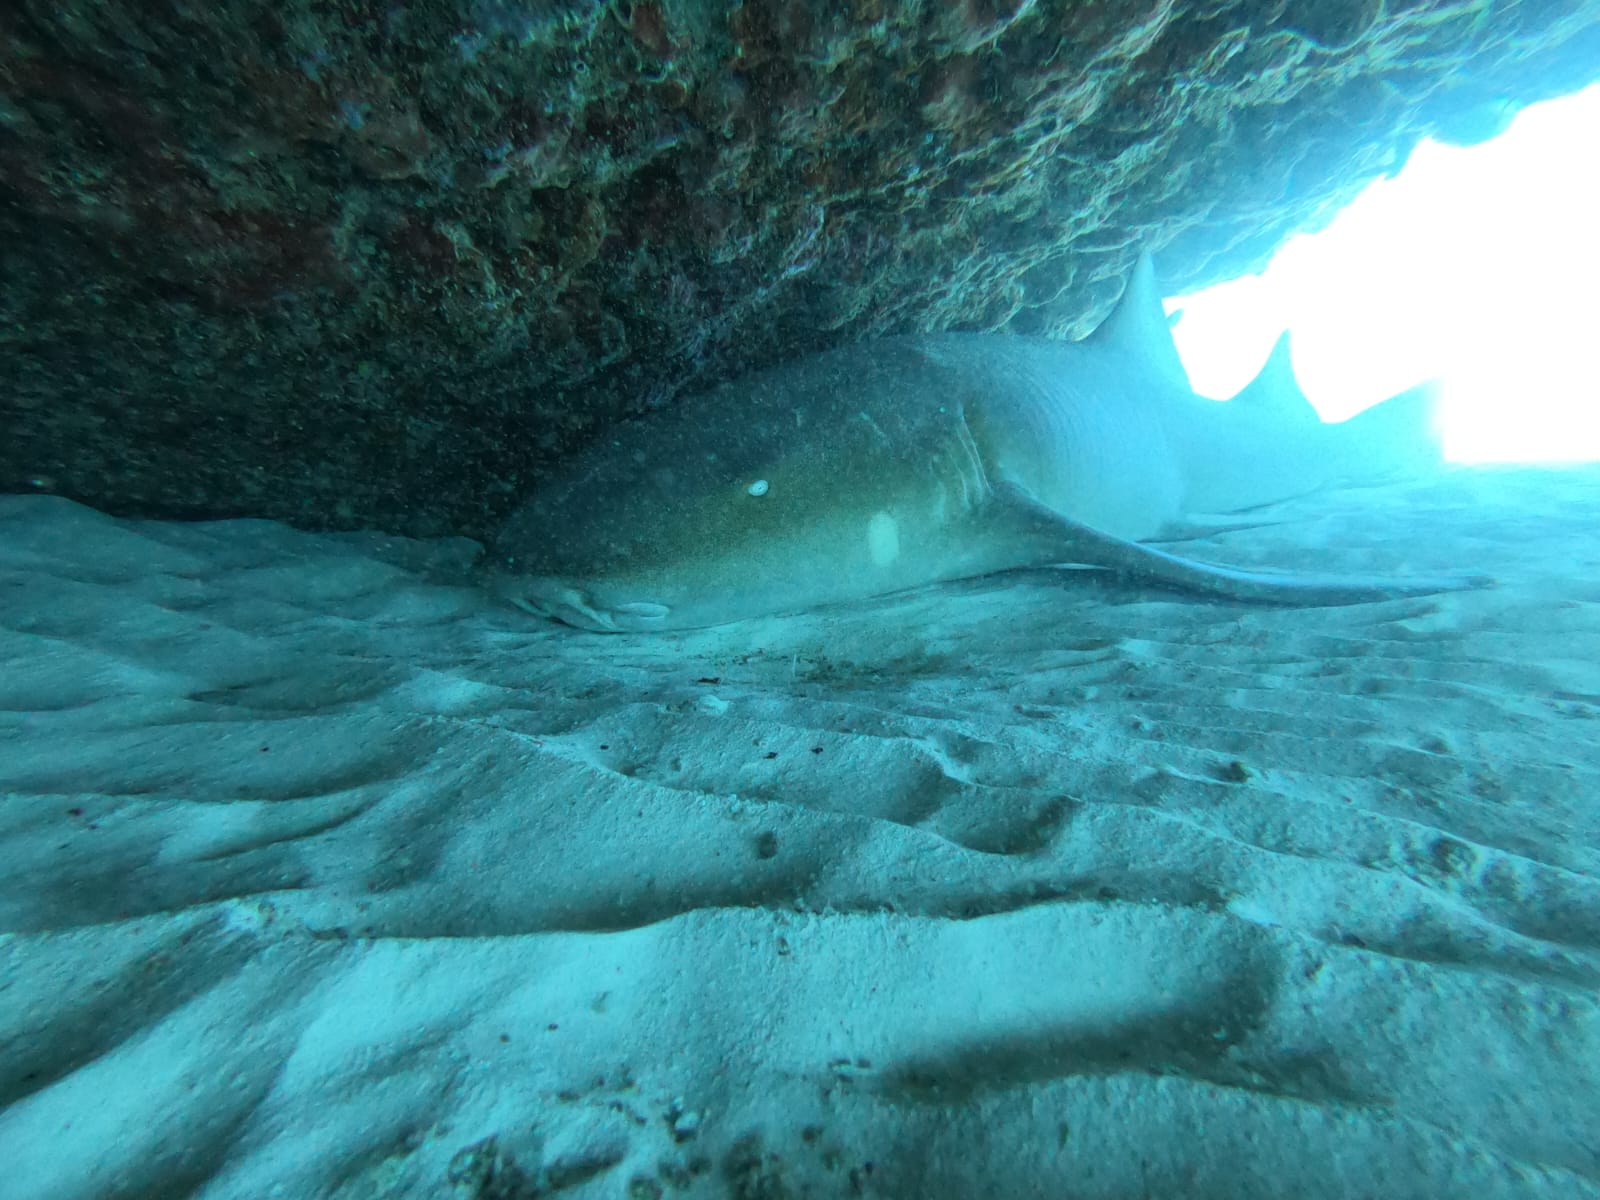 Rencontre sereine de Triton Diving avec un requin-nourrice au repos sous une corniche illuminée par le soleil dans la mer des Caraïbes.